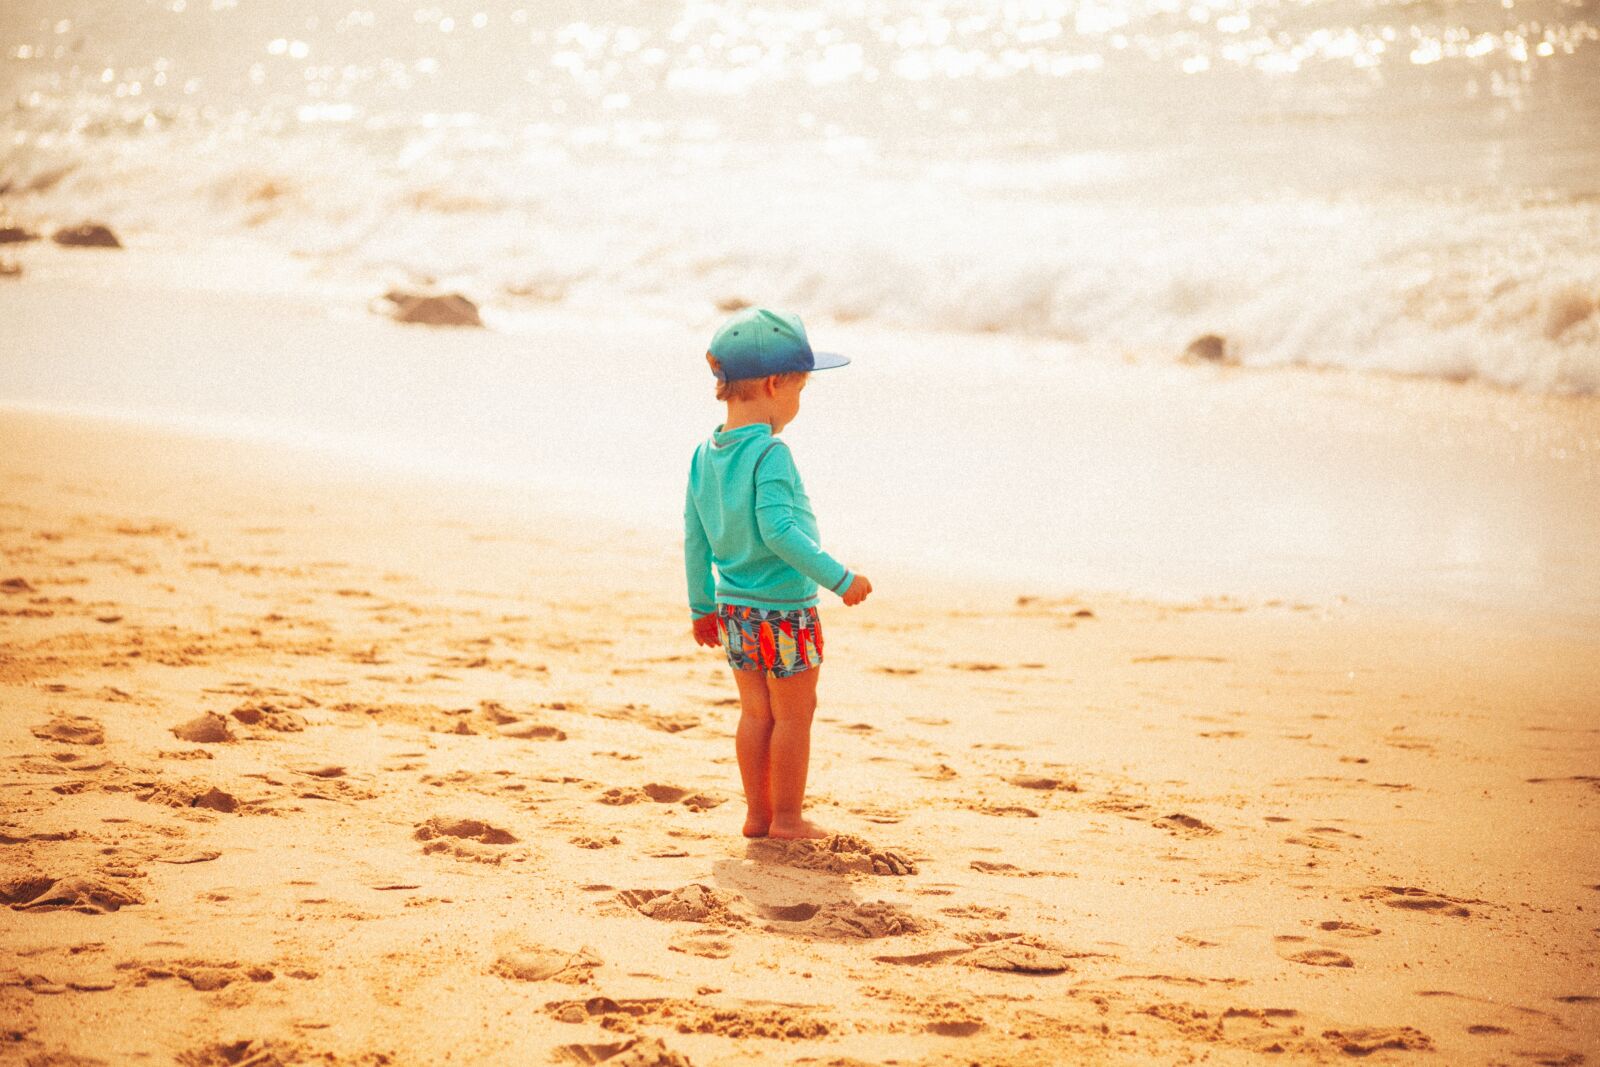 Canon EOS 5D Mark II sample photo. "Child, beach, sand" photography